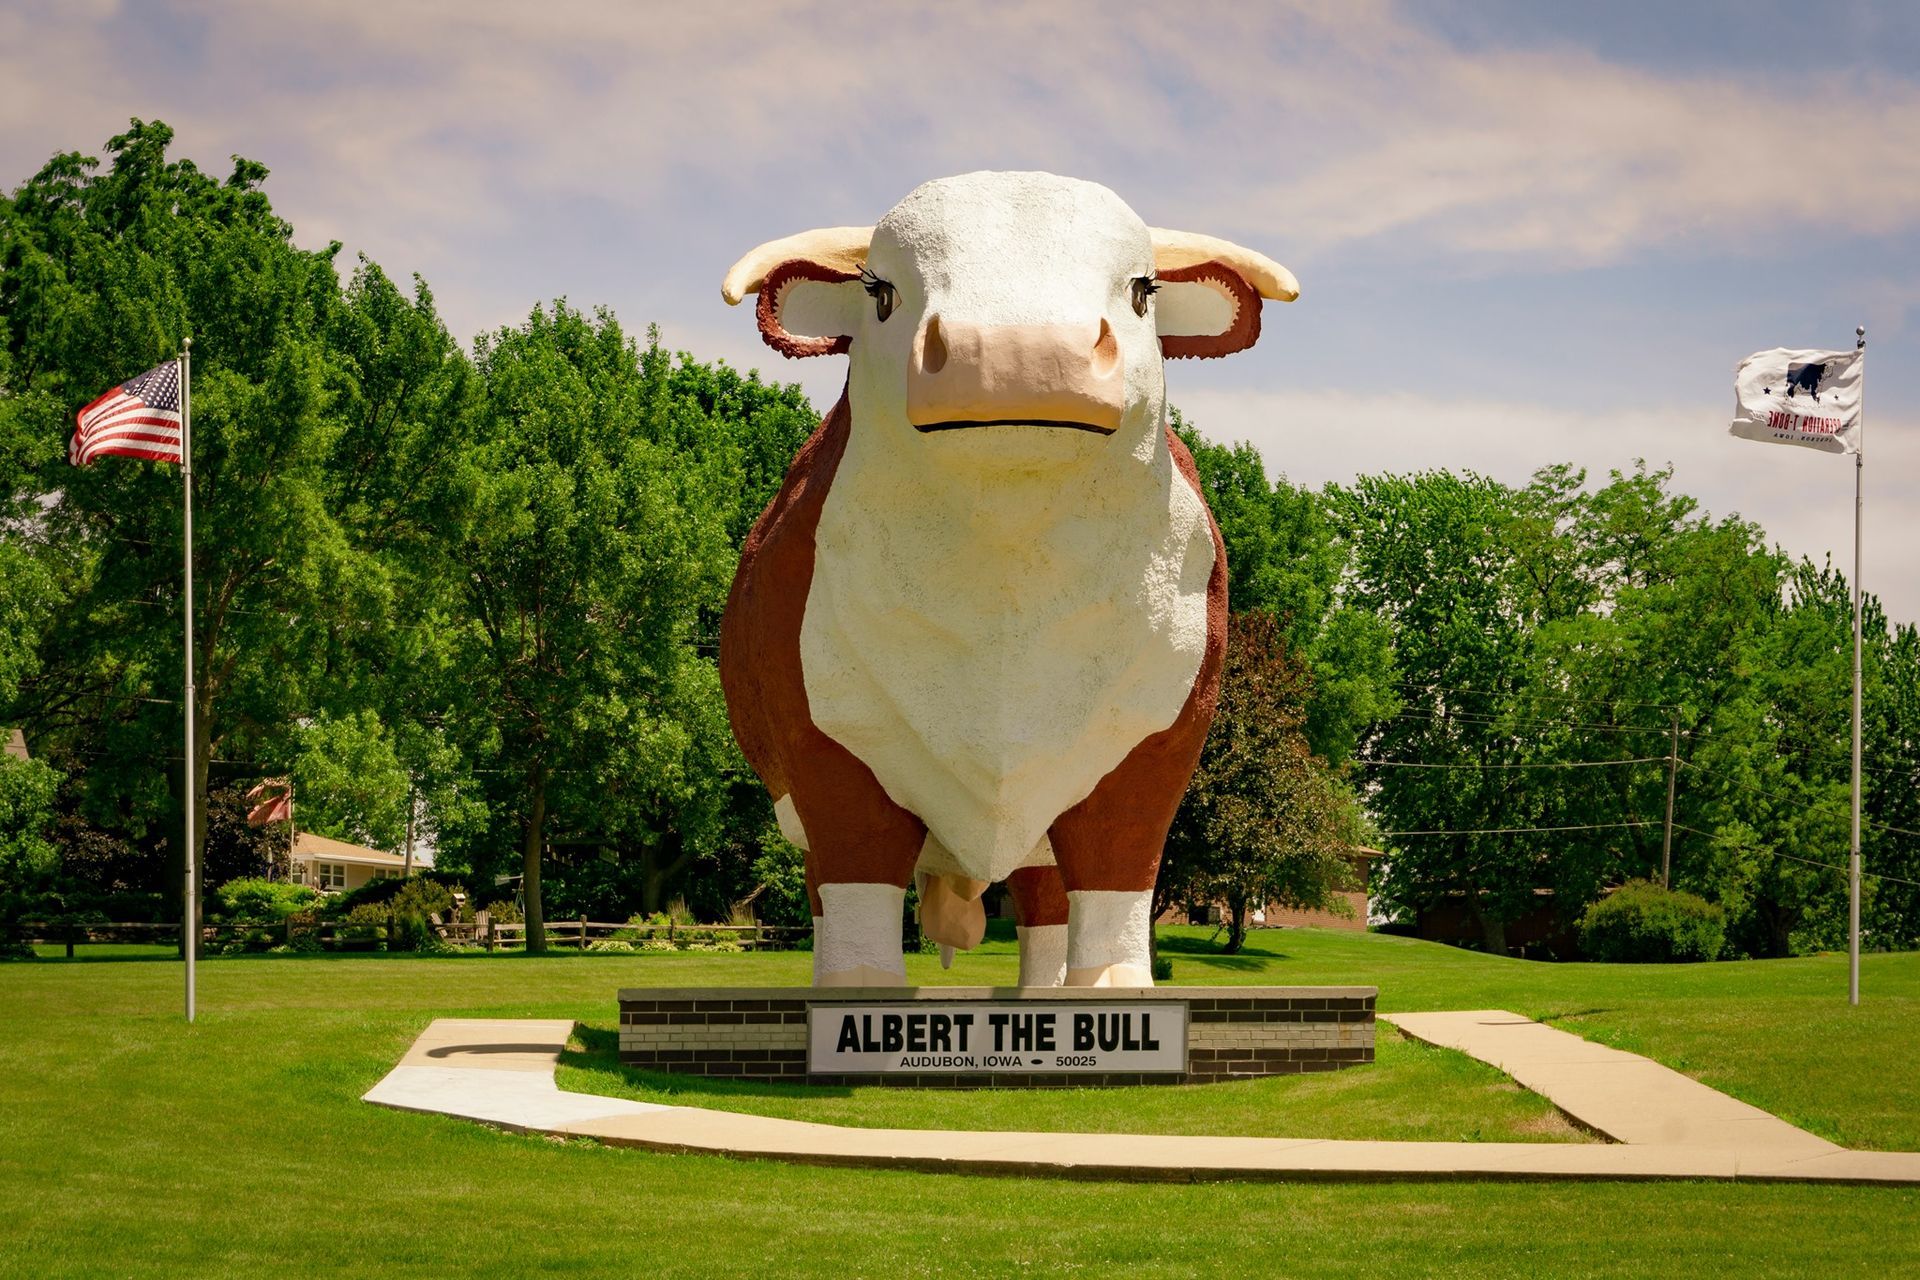 
World’s Largest Bull Sculpture: world record in Audubon, Iowa